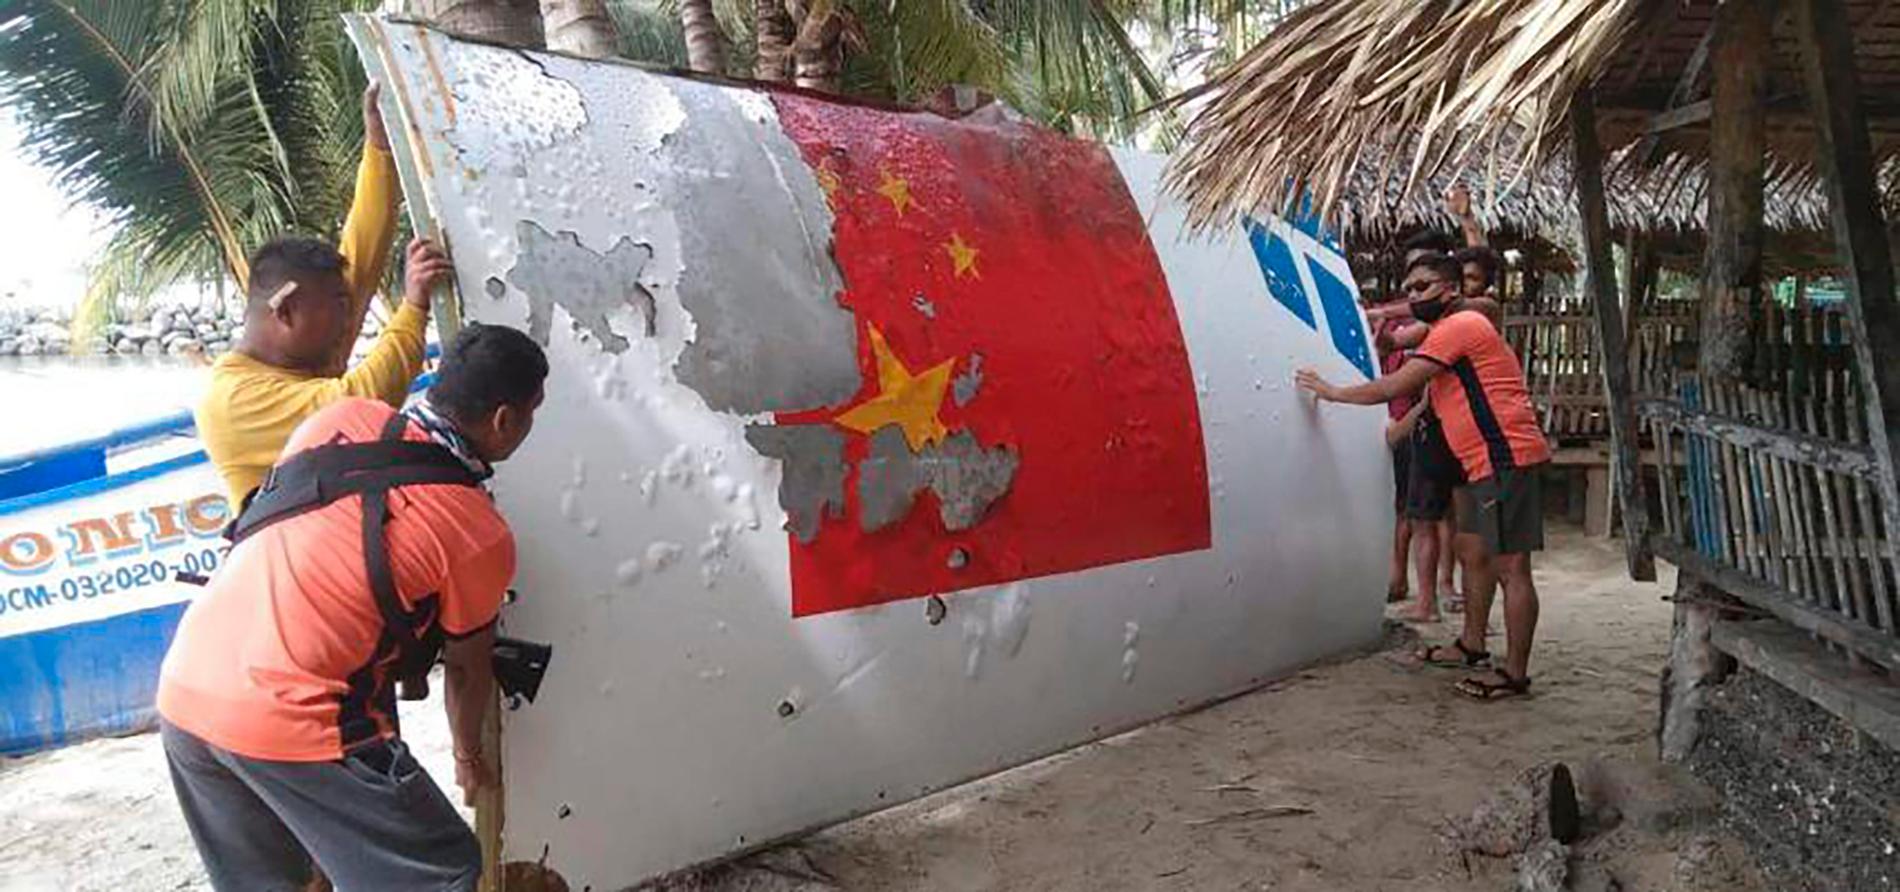 I Filipinerna kraschade kinesiskt rymdskrot så sent som i augusti i år.